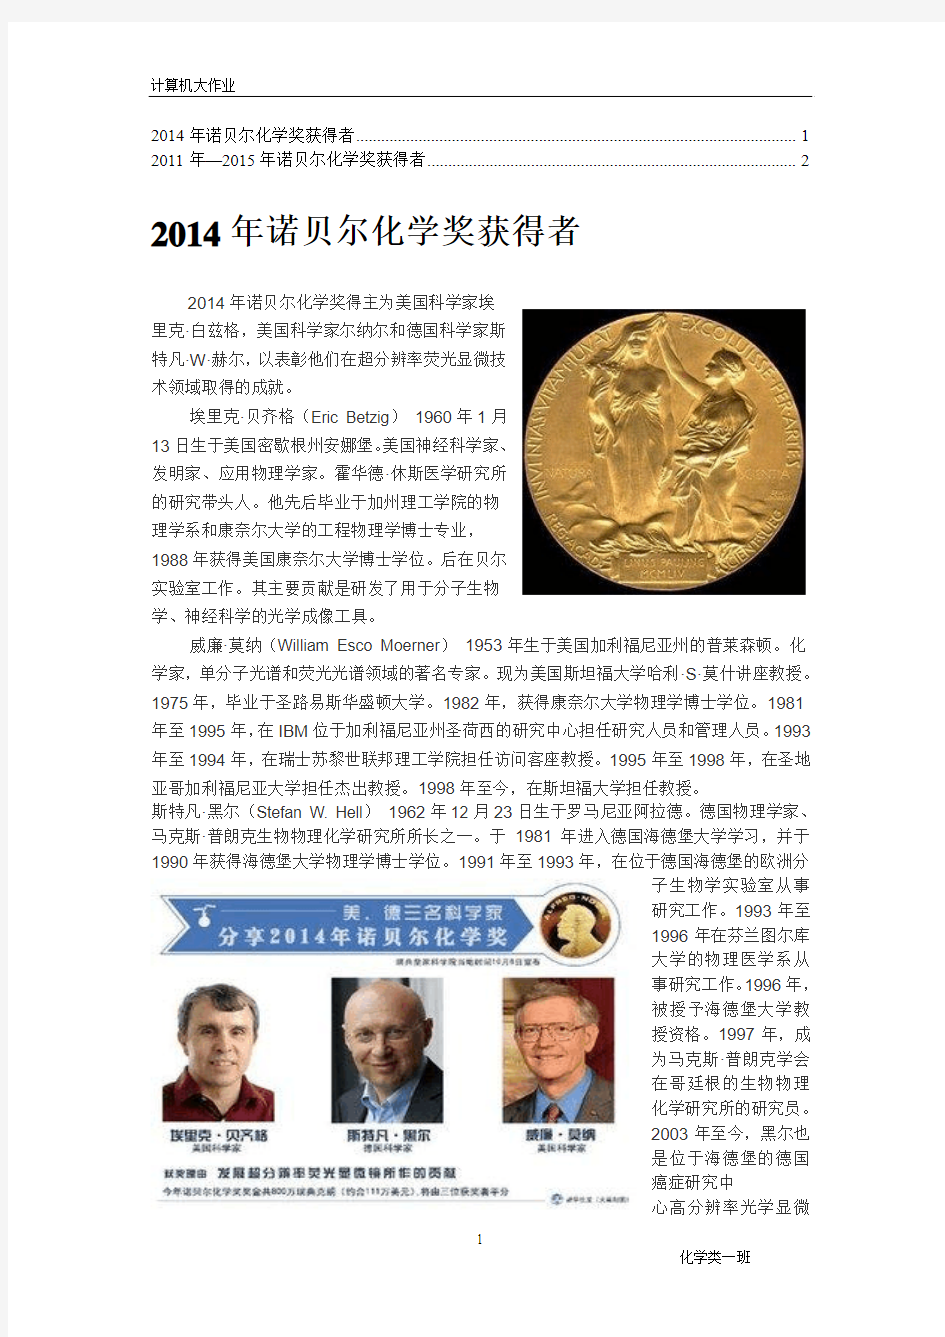 2014年诺贝尔化学奖获得者